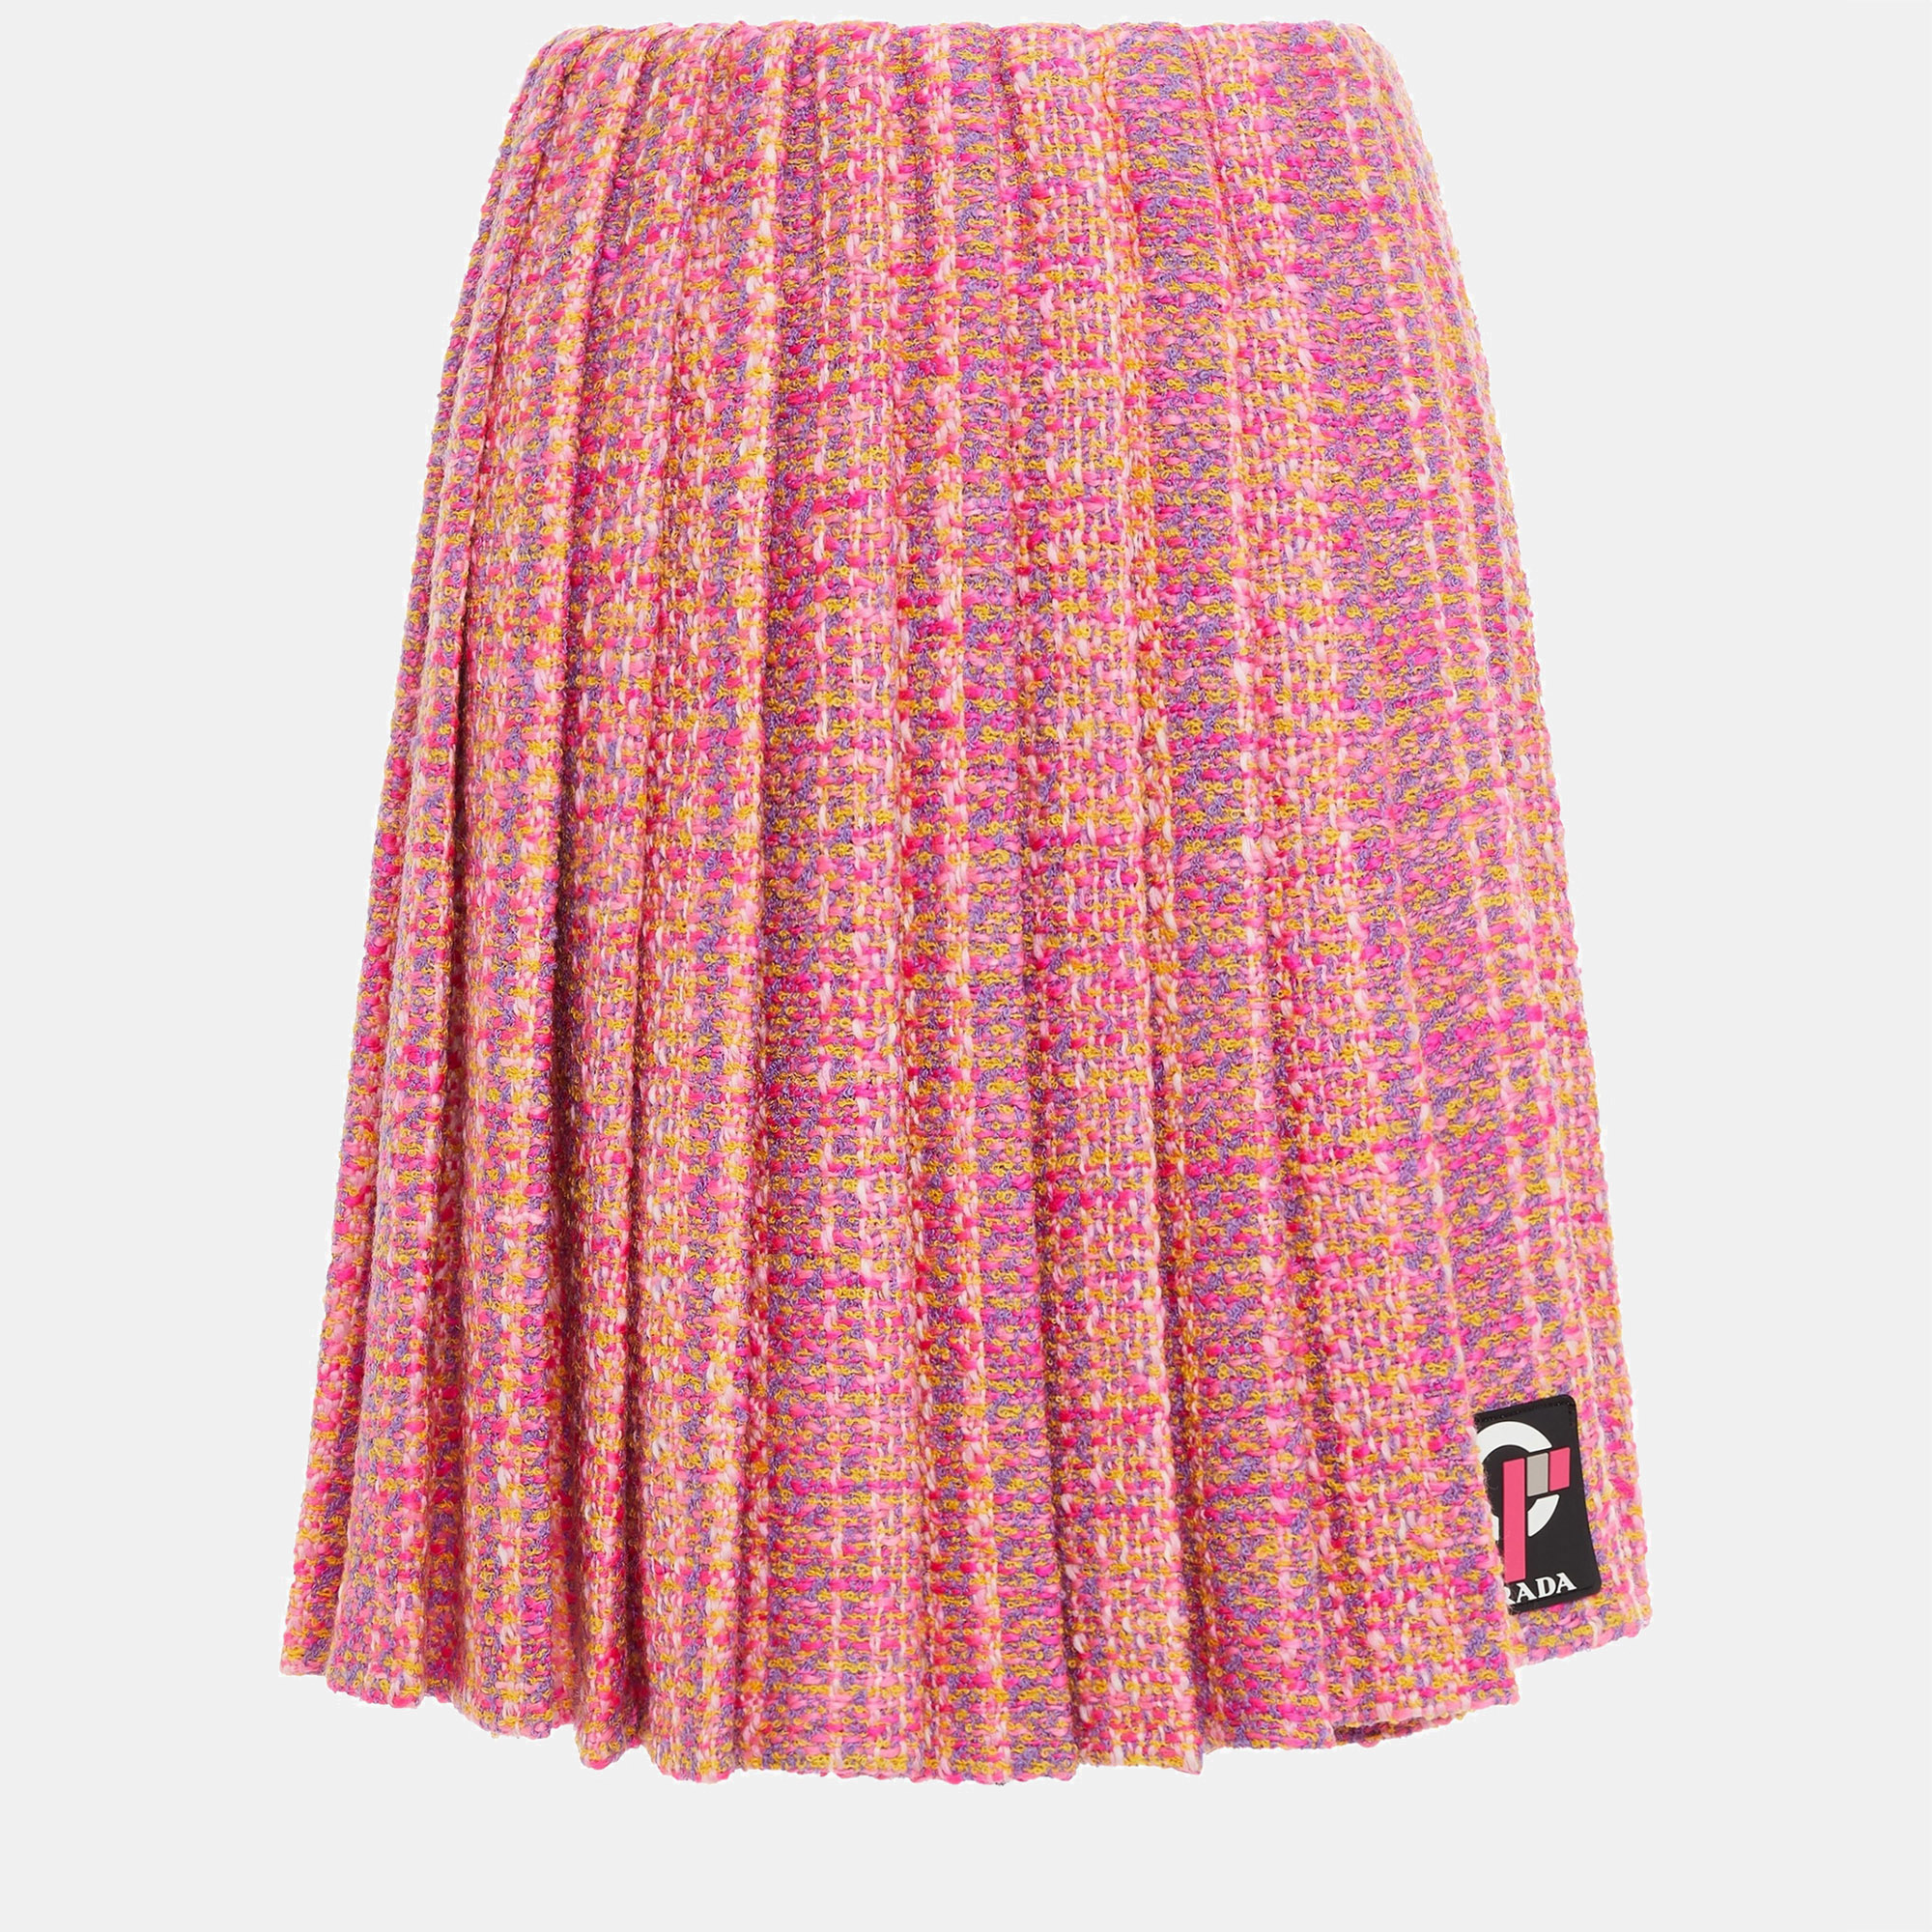 Prada virgin wool knee length skirts 44